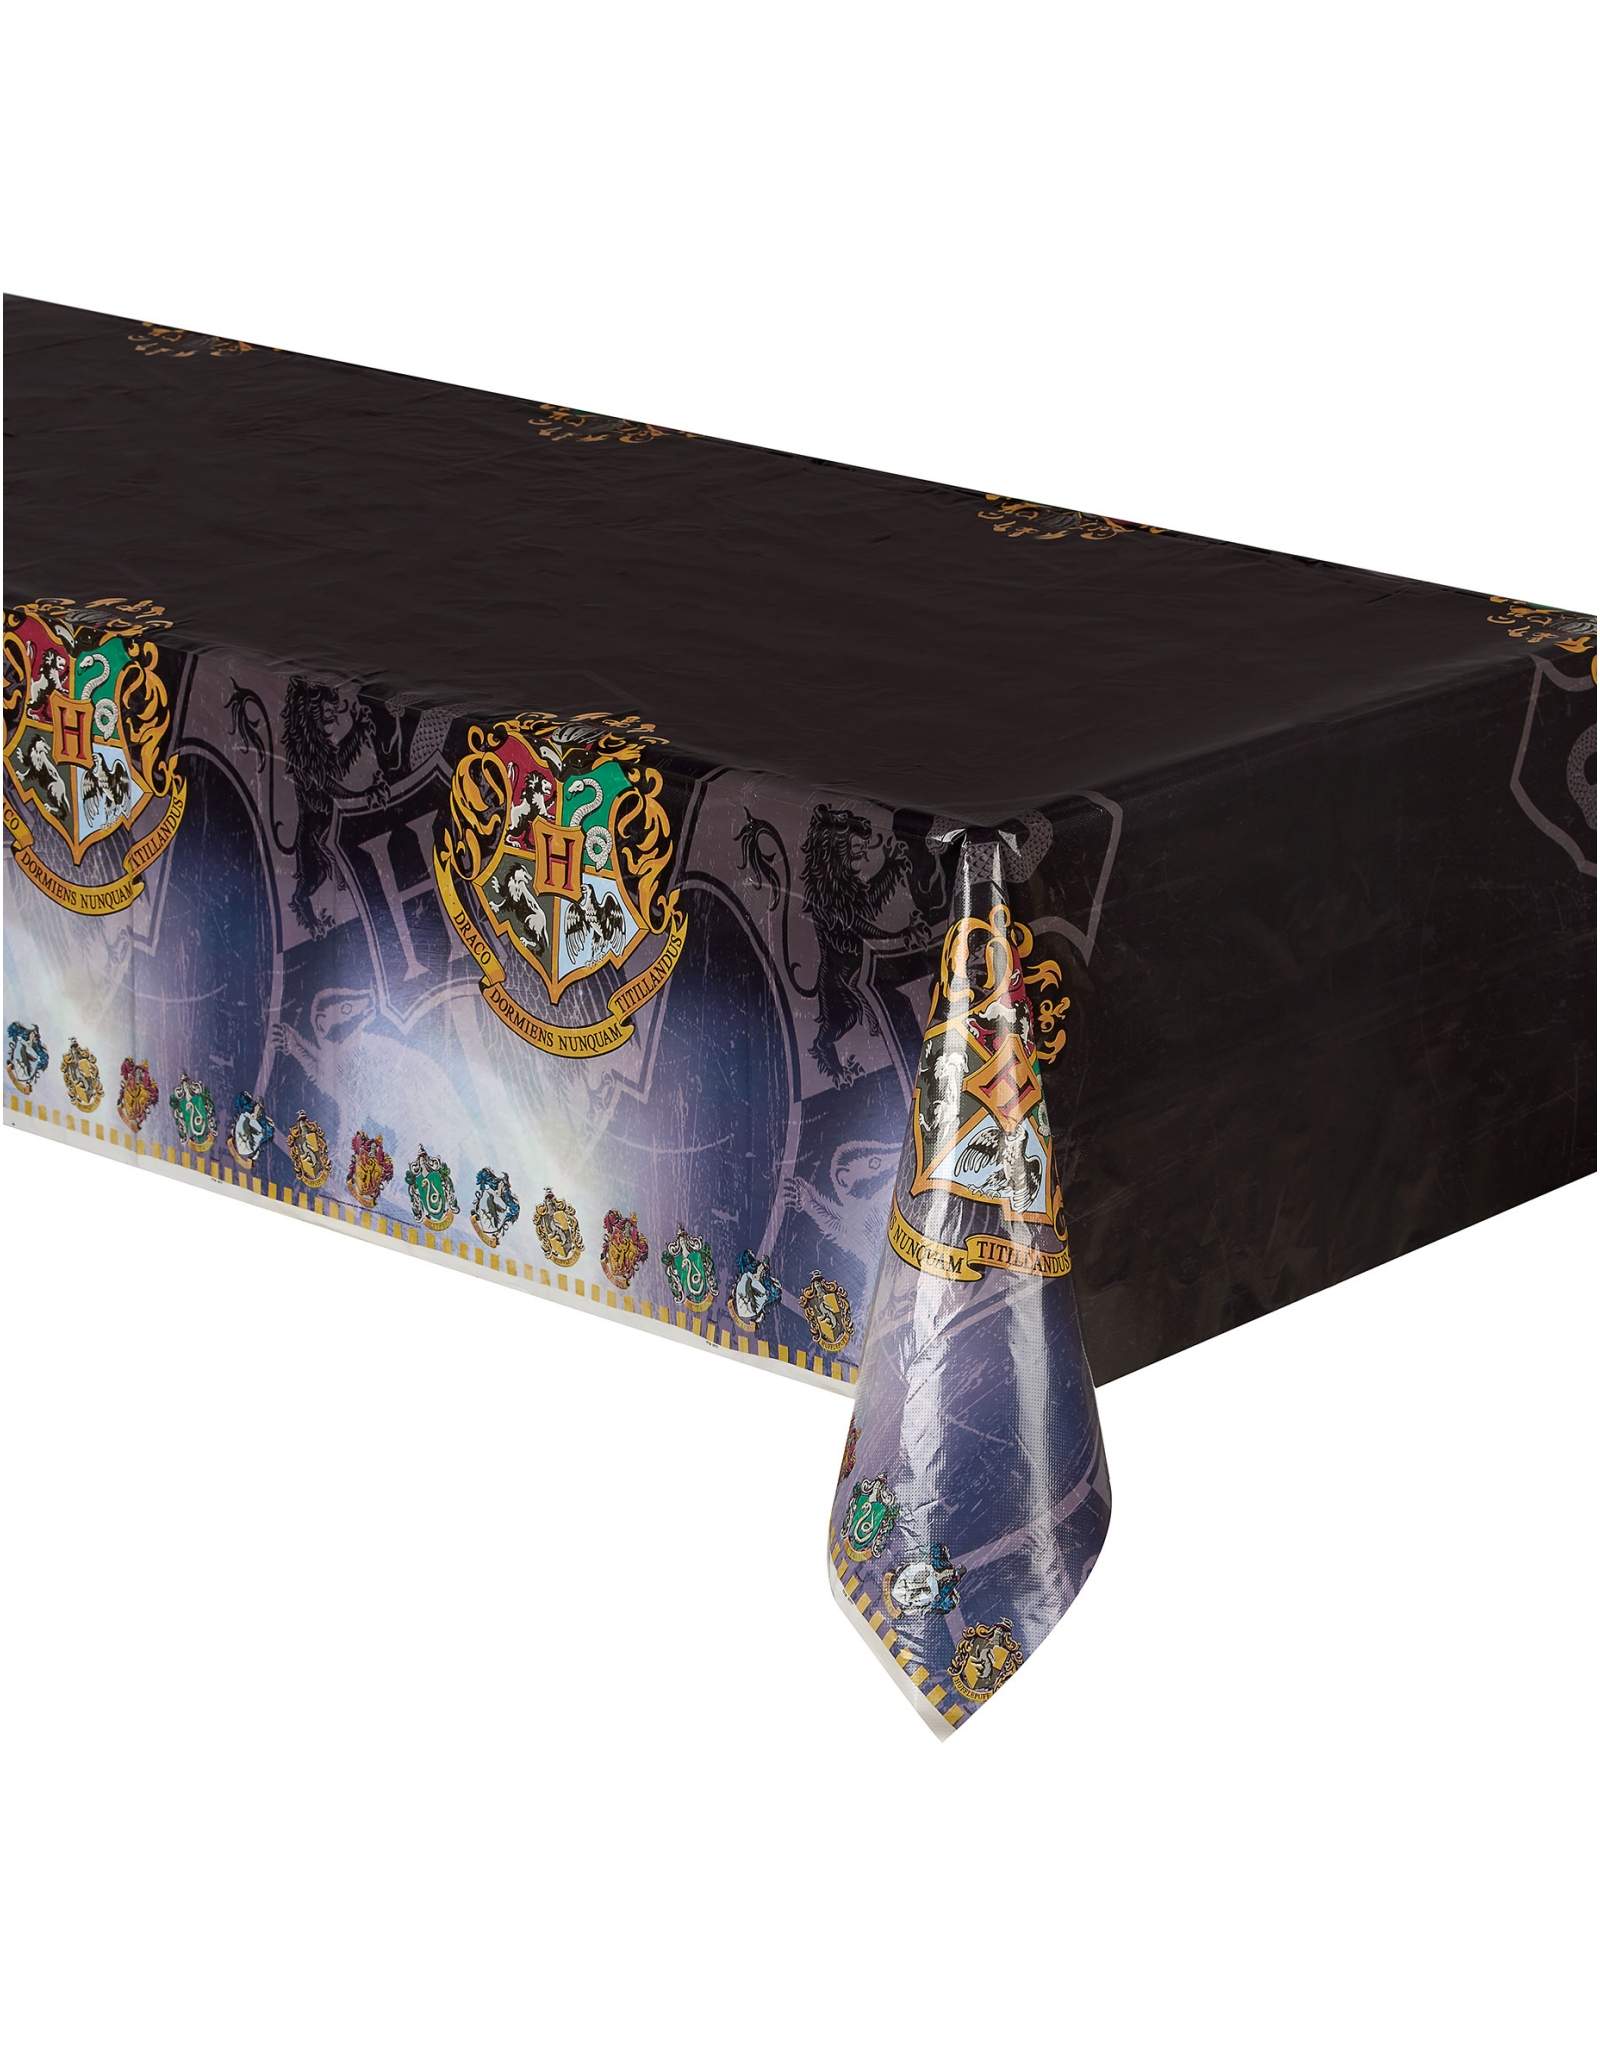 Pack décoration d'anniversaire Harry Potter